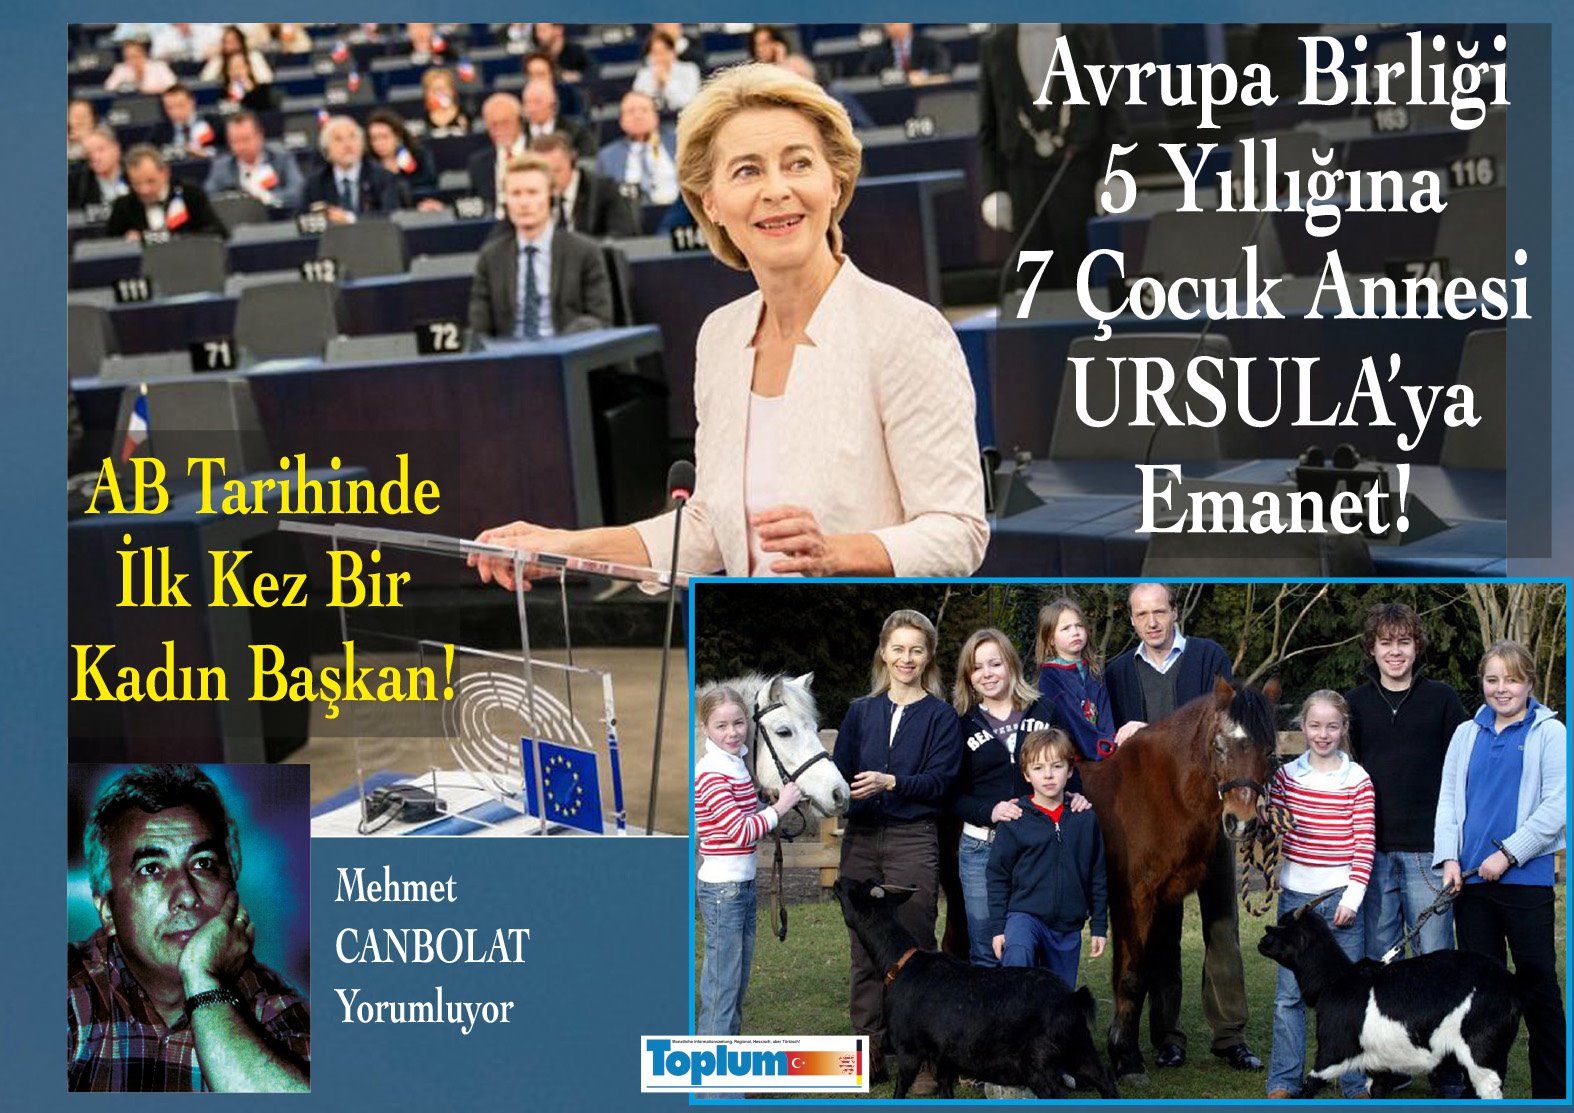 AVRUPA BİRLİĞİ, 7 ÇOCUKLU BİR ANNEYE EMANET! - Toplum24